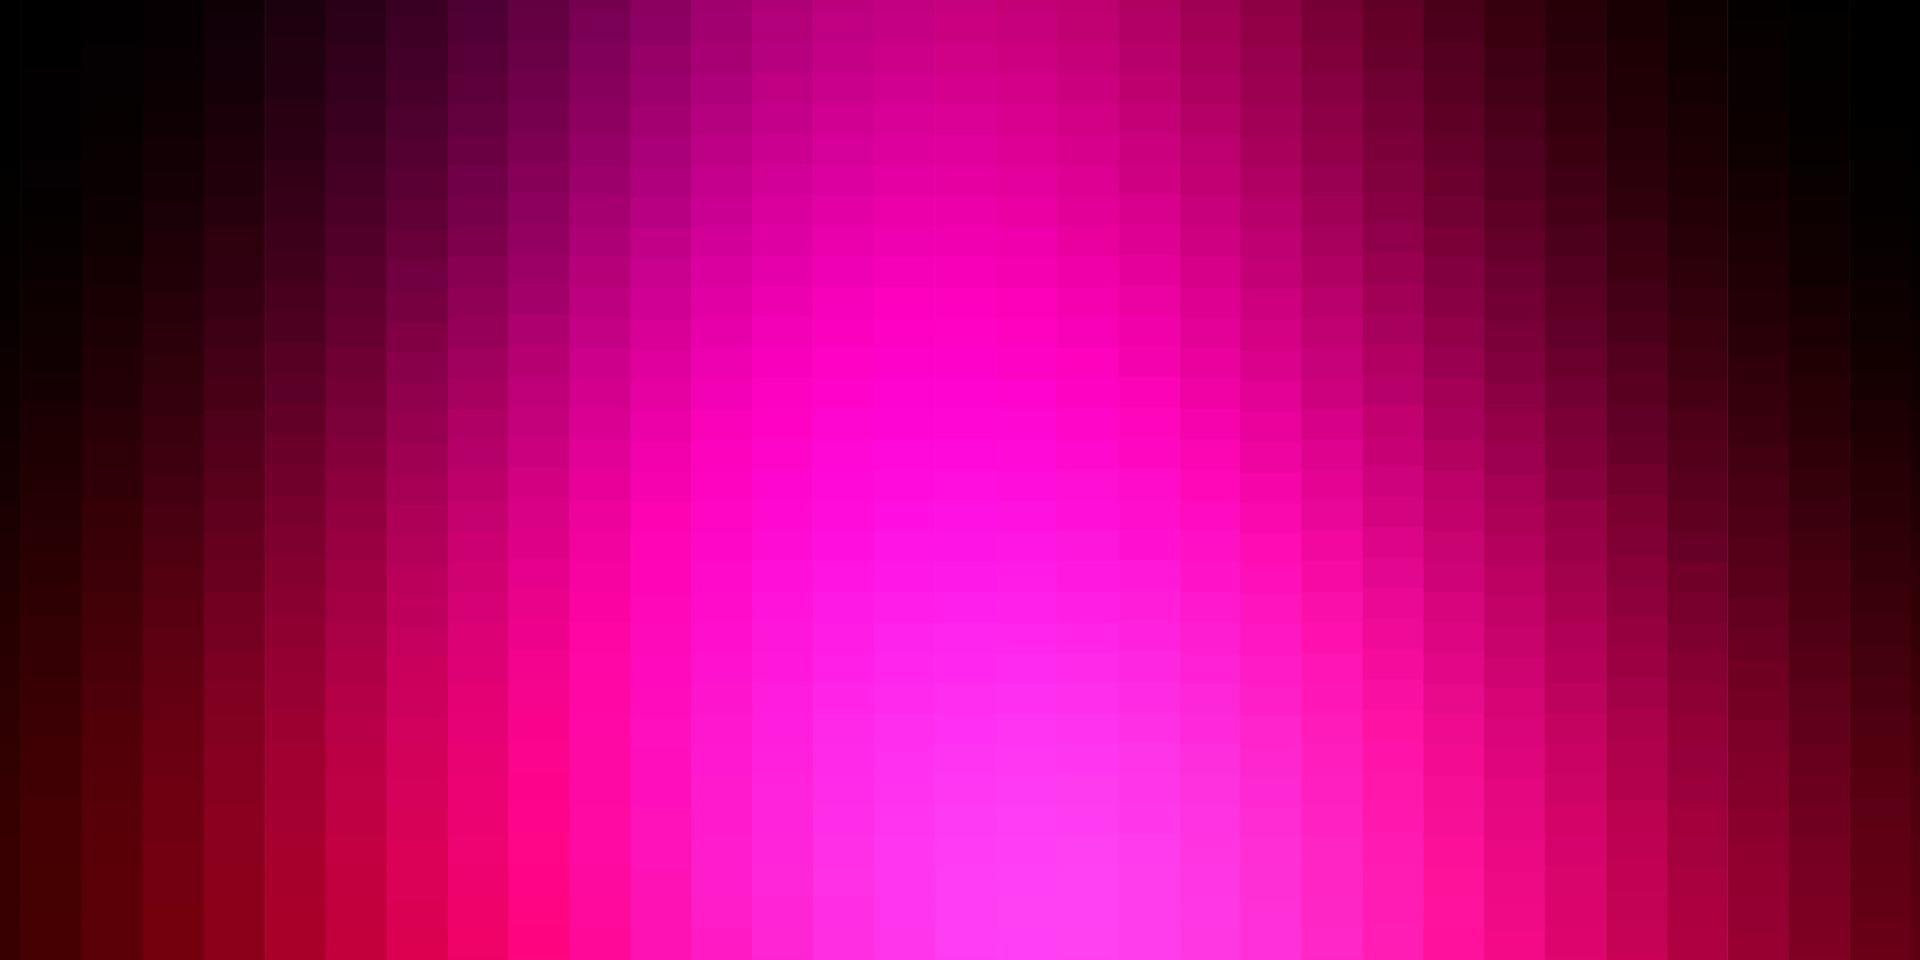 padrão de vetor rosa escuro em estilo quadrado.